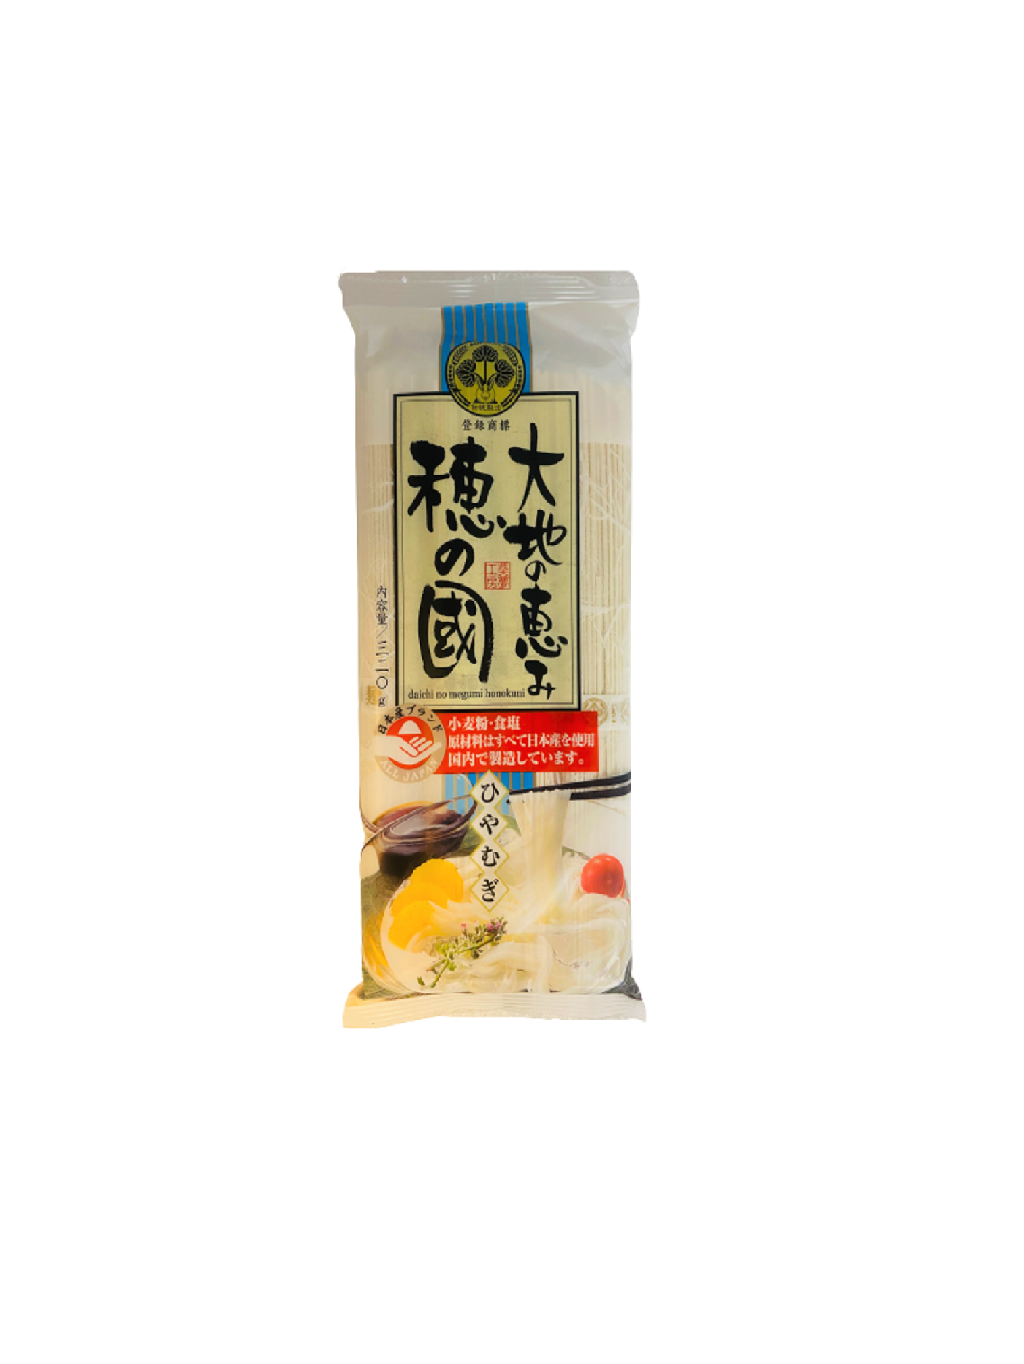 Daichi no Megumi Hiyamugi Noodles